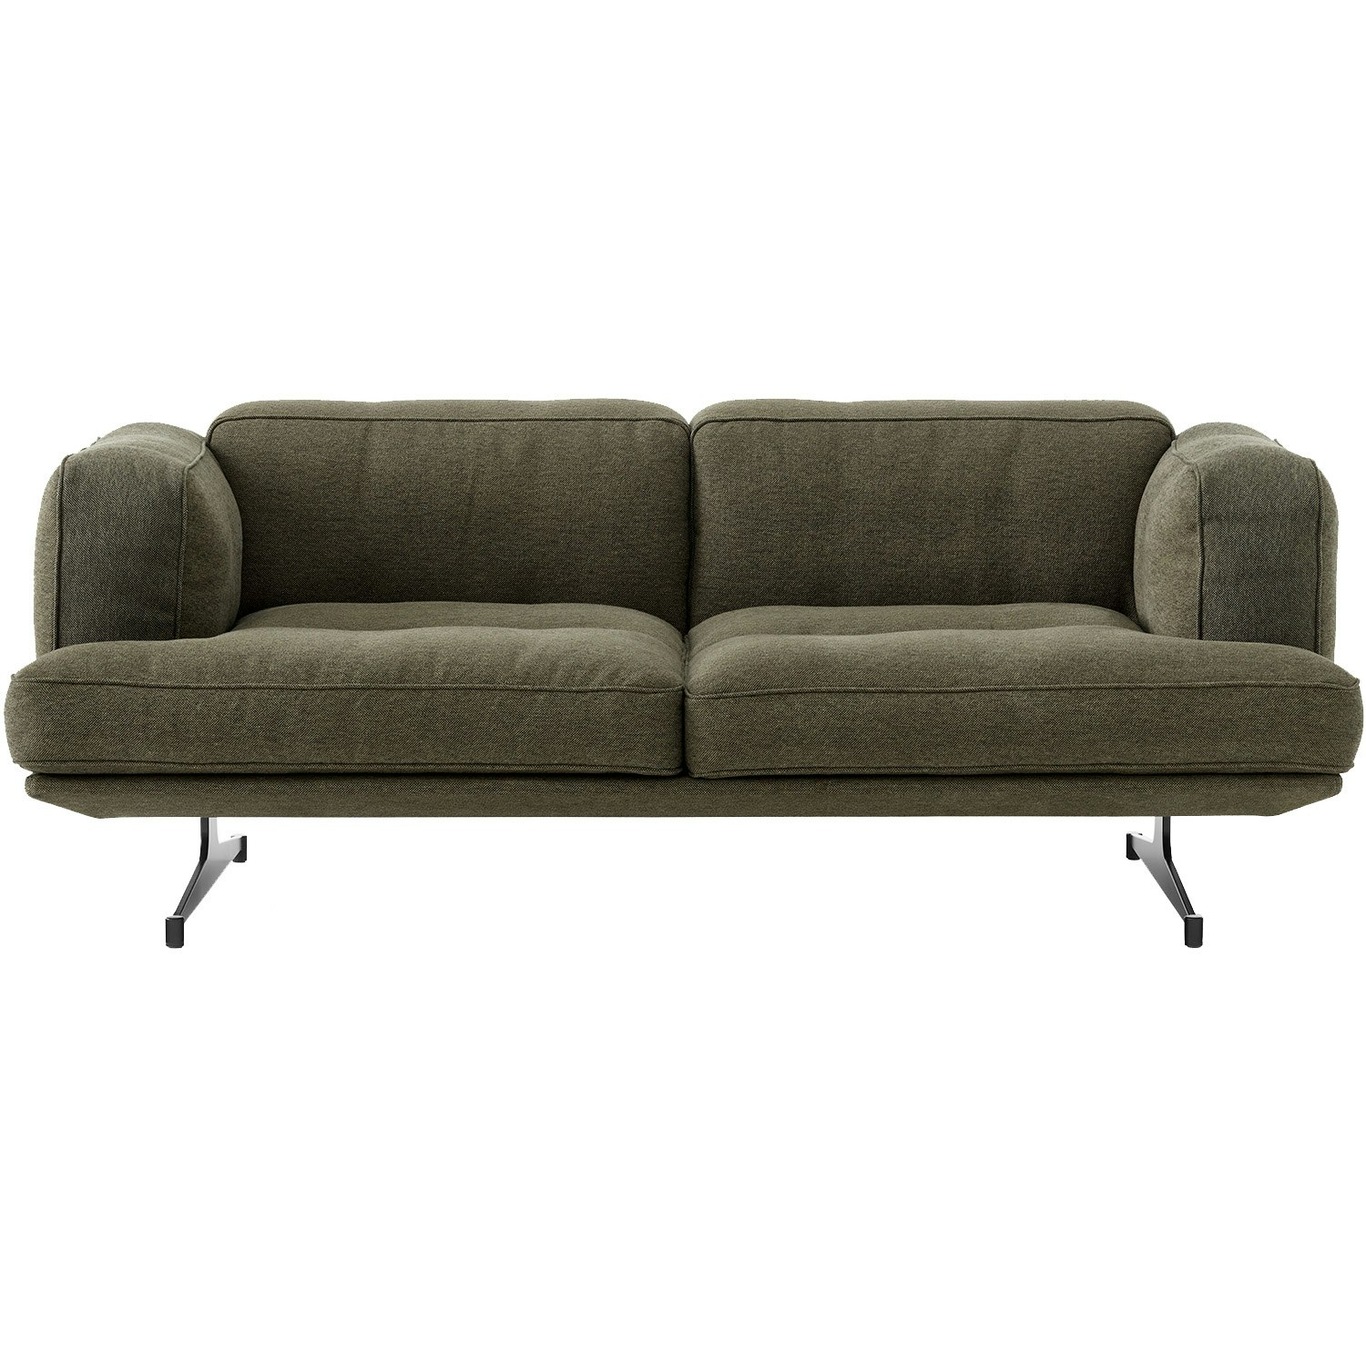 Inland AV23 3 Seater Sofa, Clay 0014